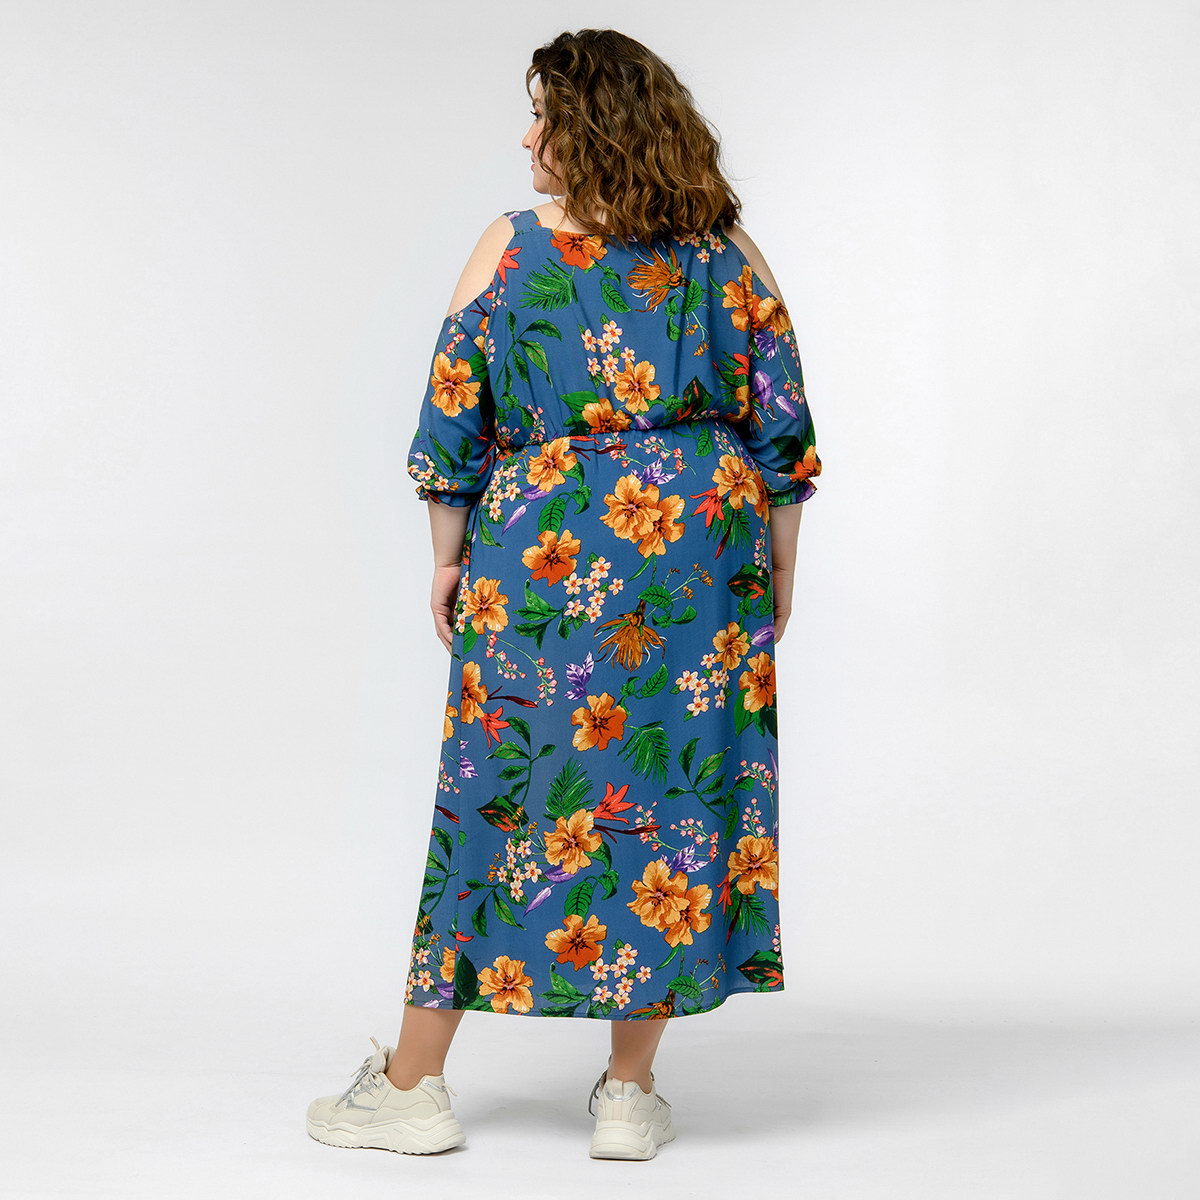 Платье из штапеля с открытыми плечами, принт цветочный, джинсовый